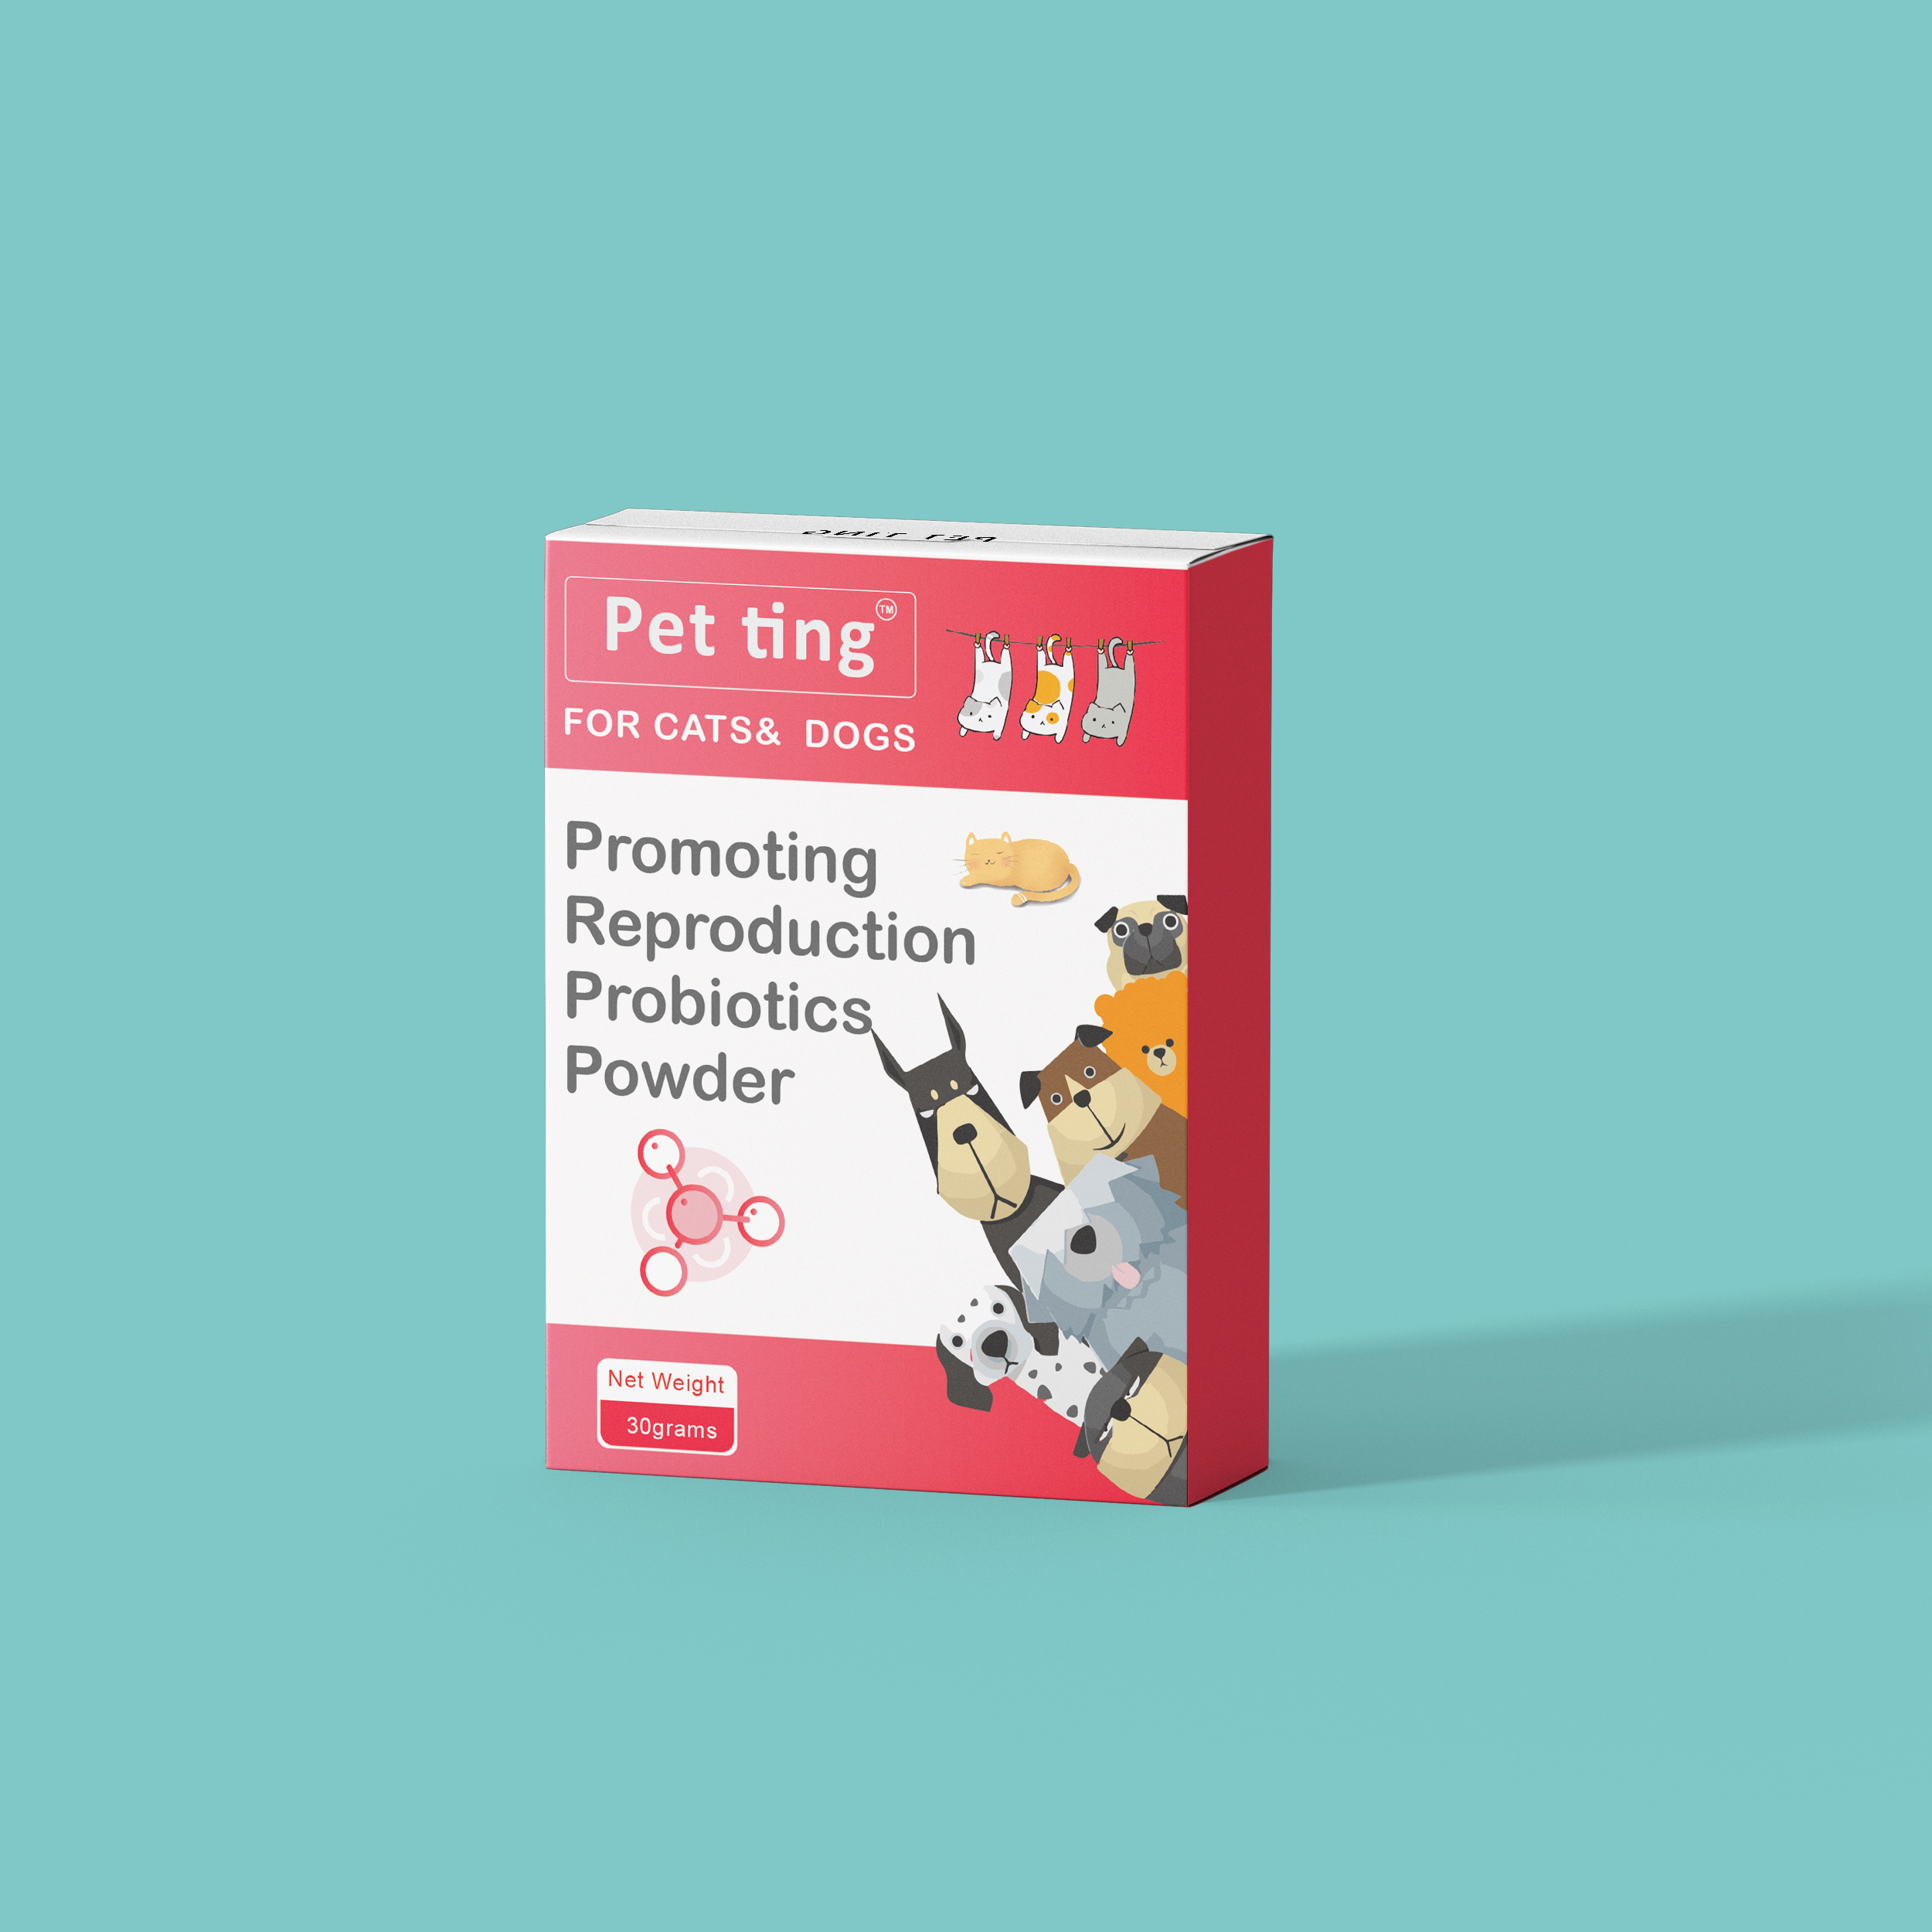 Multistrain gemischtes probiotisches Pulver zur Förderung der Reproduktion für Haustiere